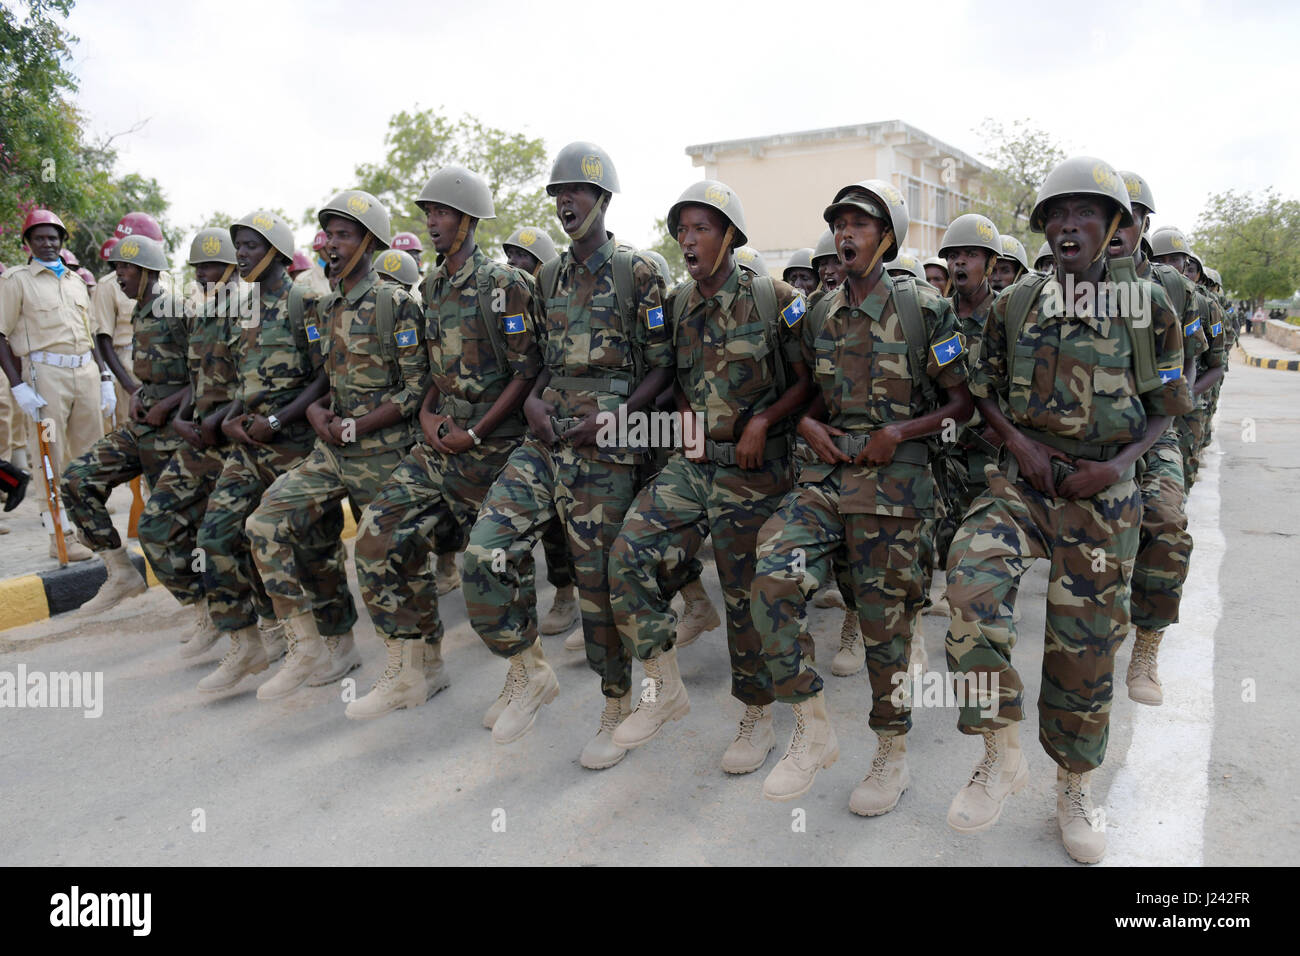 Soldados en el desfile de las fuerzas de defensa de Somalia durante una ceremonia para conmemorar el 57º Aniversario del ejército nacional somalí celebrada el 12 de abril de 2017 en Mogadiscio, Somalia. Foto de stock